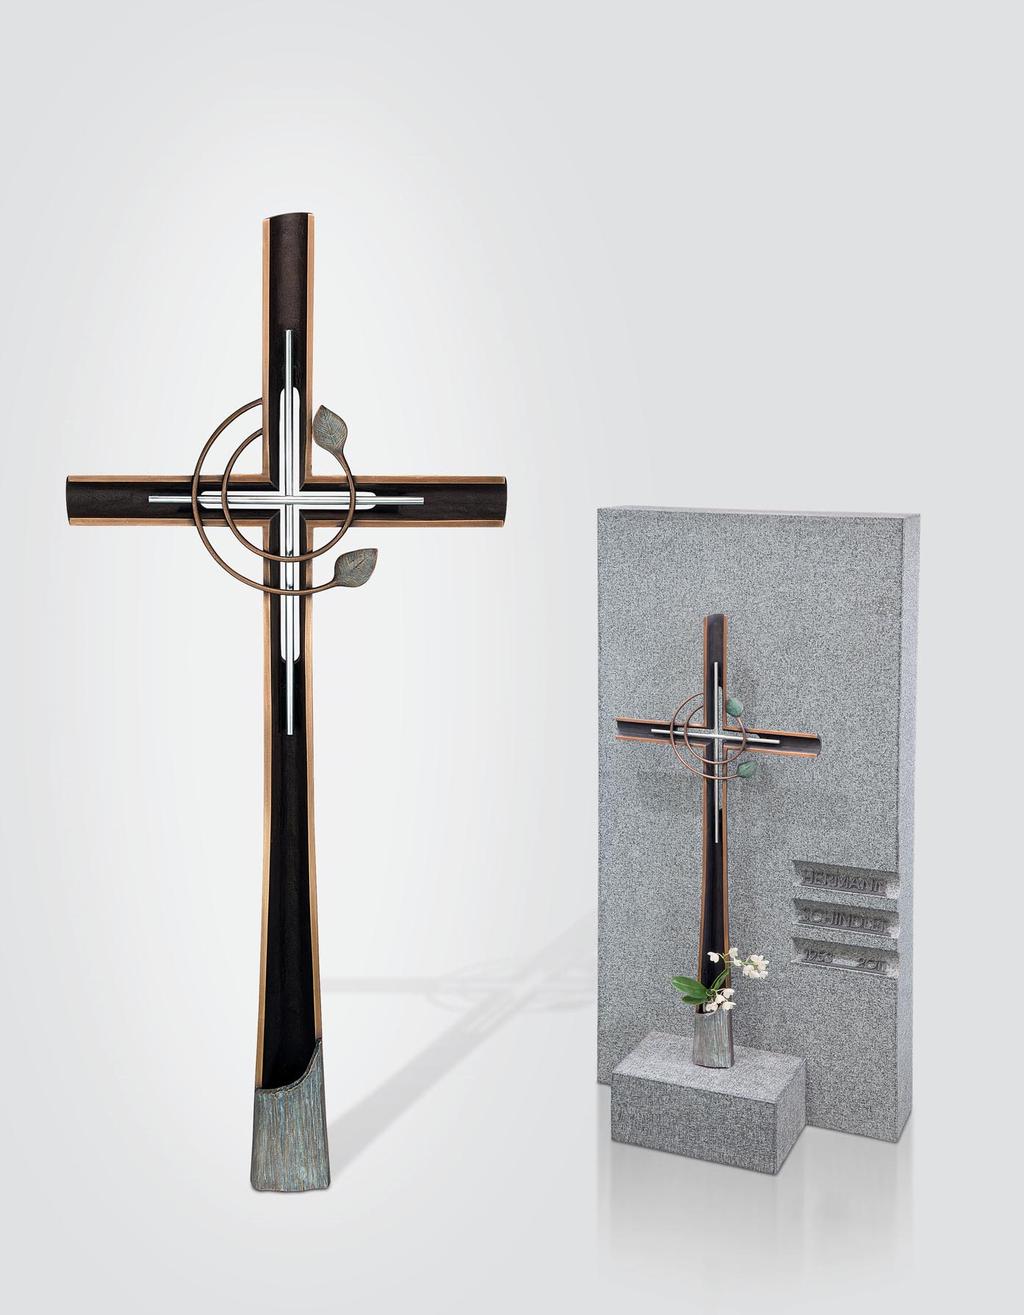 Nr. 60238 Bronze/ Edelstahl 91x40x7 cm Im unteren Teil des Kreuzes kann eine Vase eingestellt